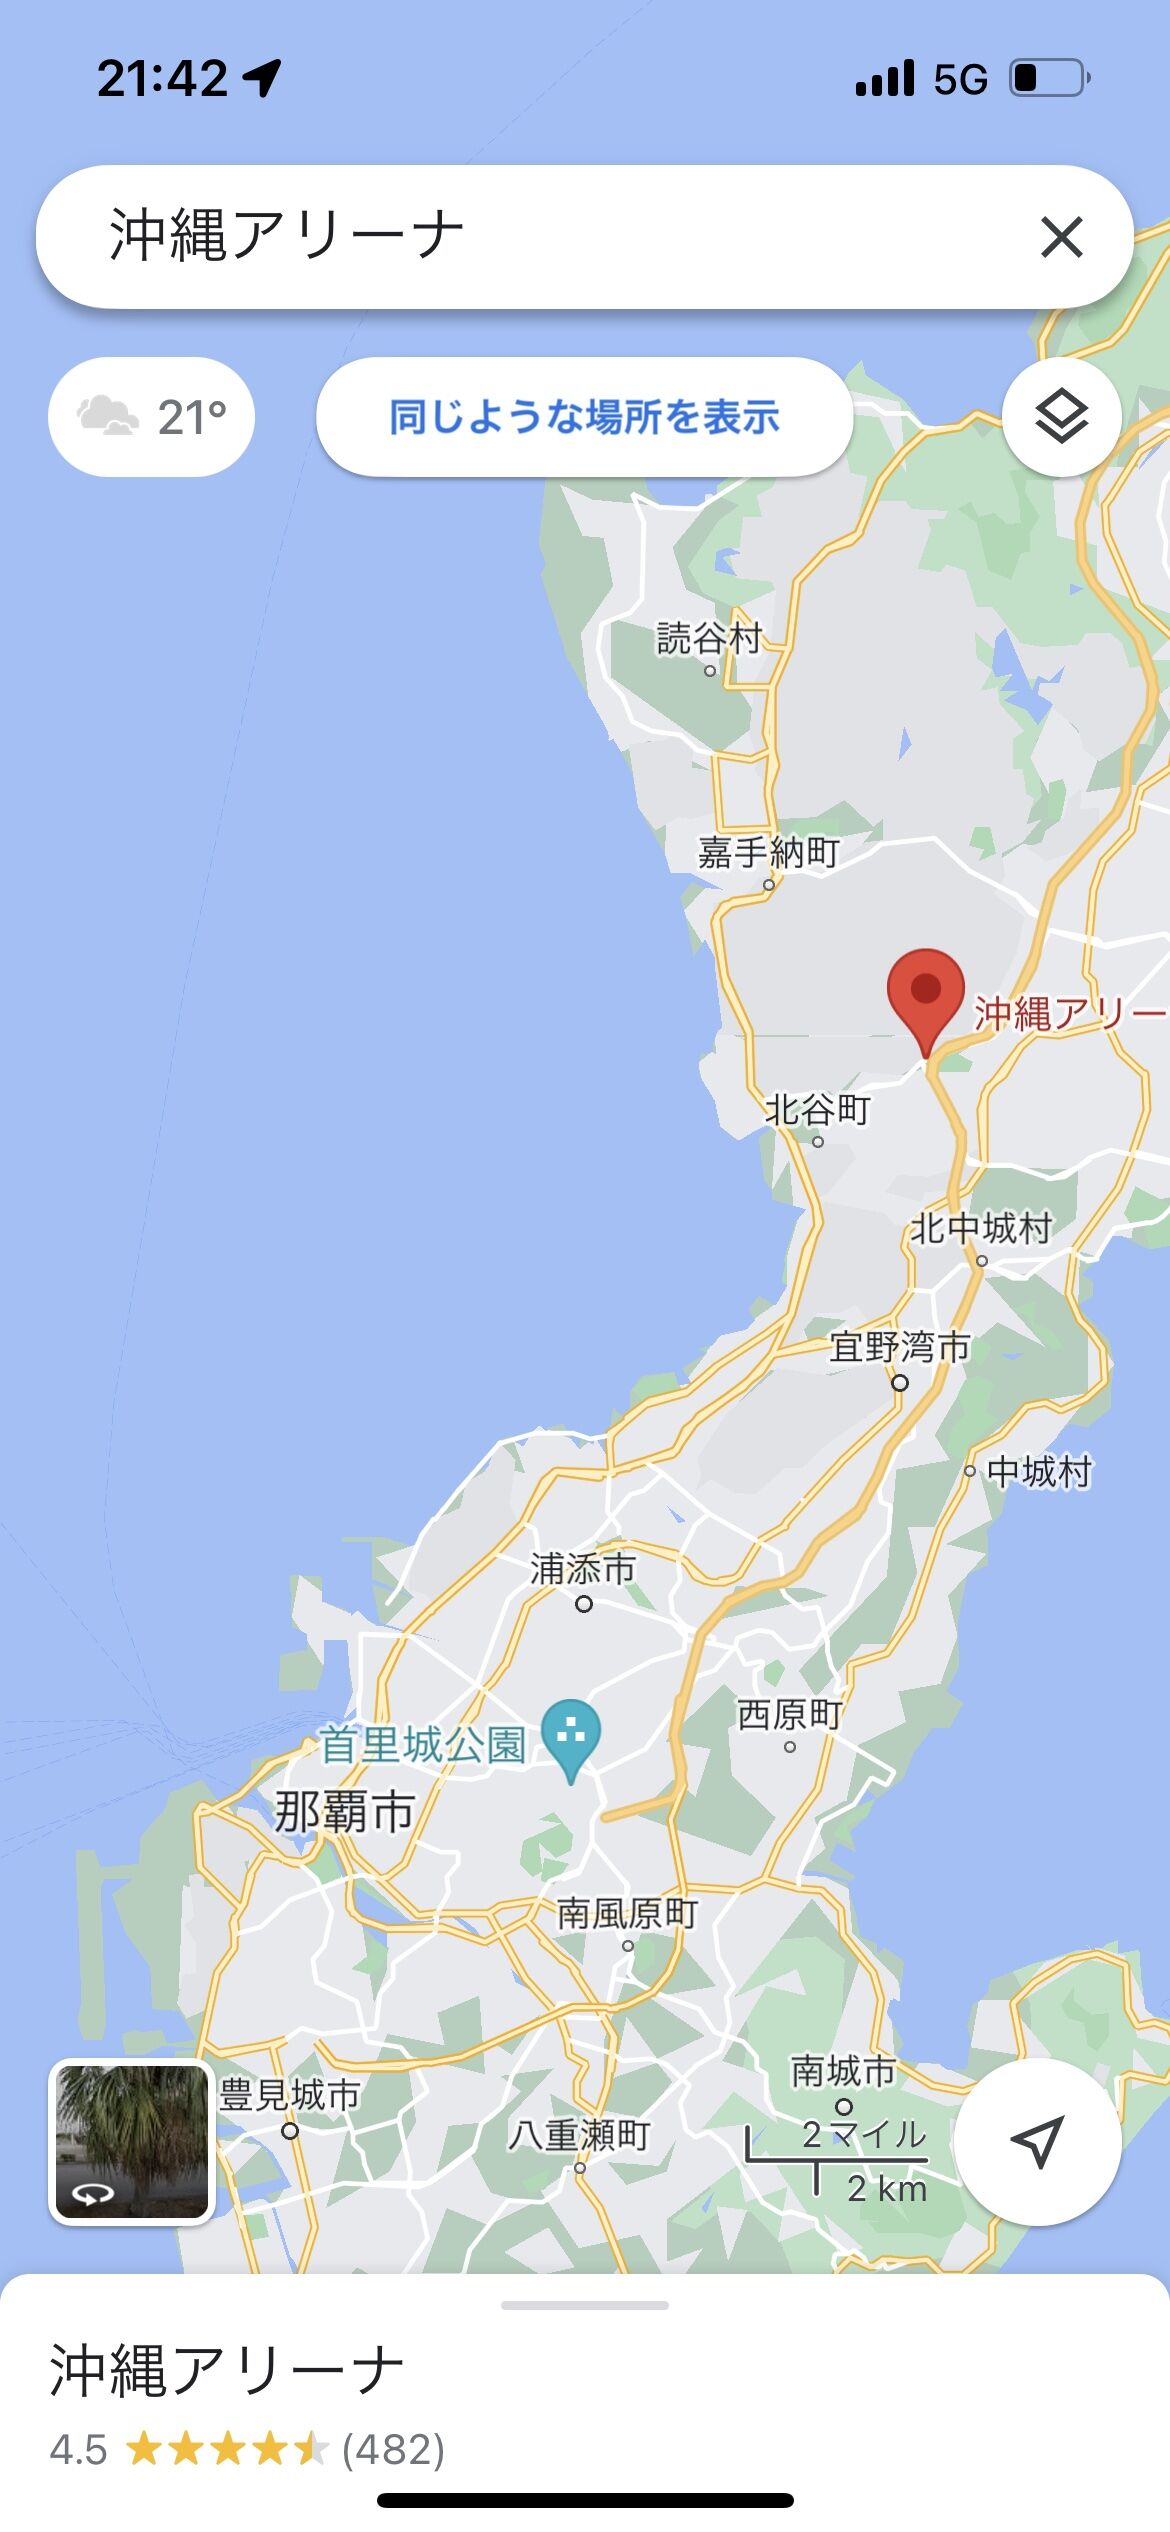 【乃木坂46】真夏の全国ツアー、沖縄会場の位置を調べた結果・・・・